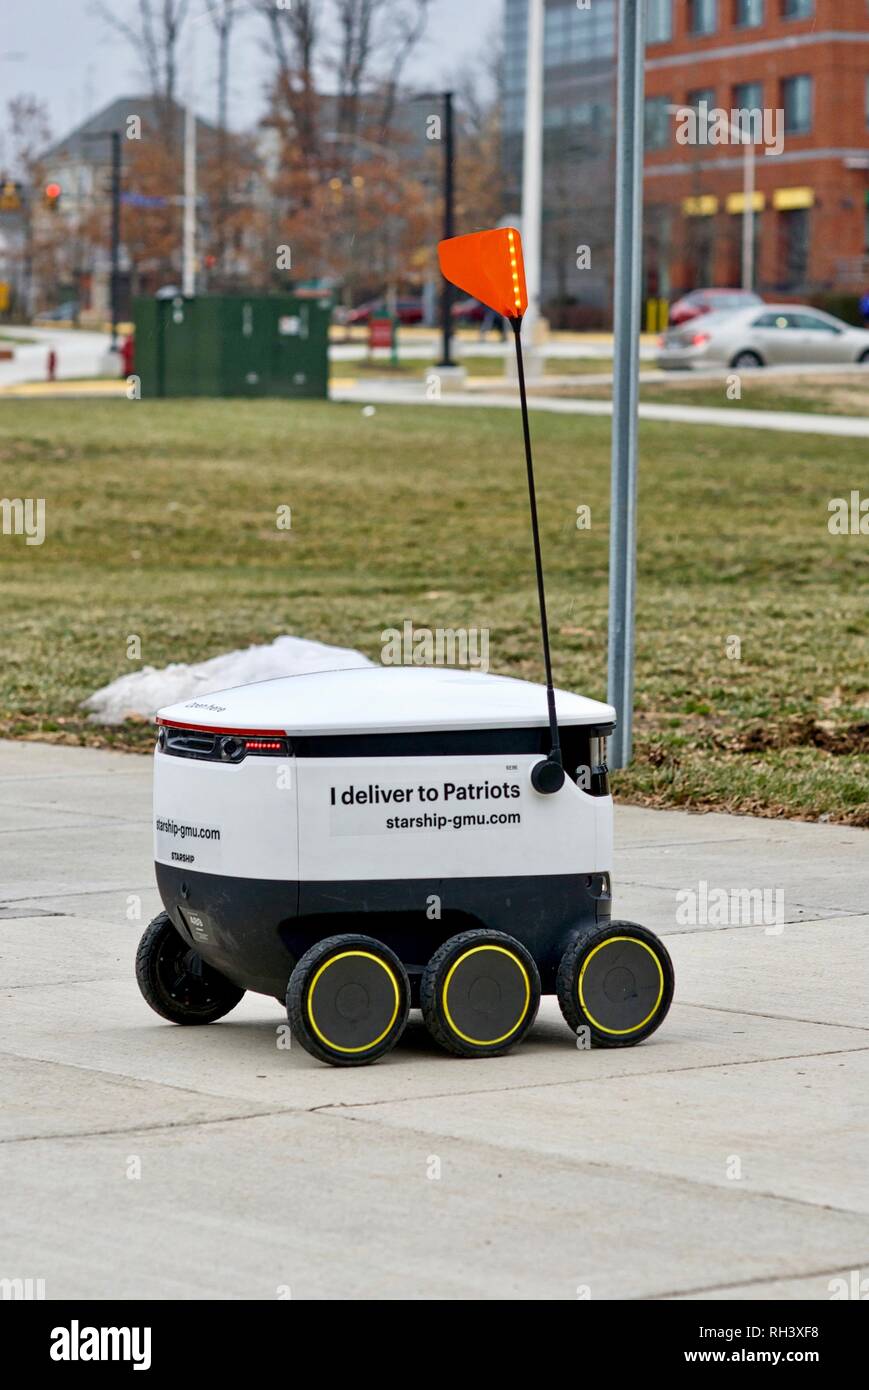 Fairfax, Virginia, USA - Januar 29, 2019: Ein autonomes Lebensmittel-lieferservice  Roboter fährt auf dem Weg zu einem Kunden auf dem Campus der George Mason  University Stockfotografie - Alamy